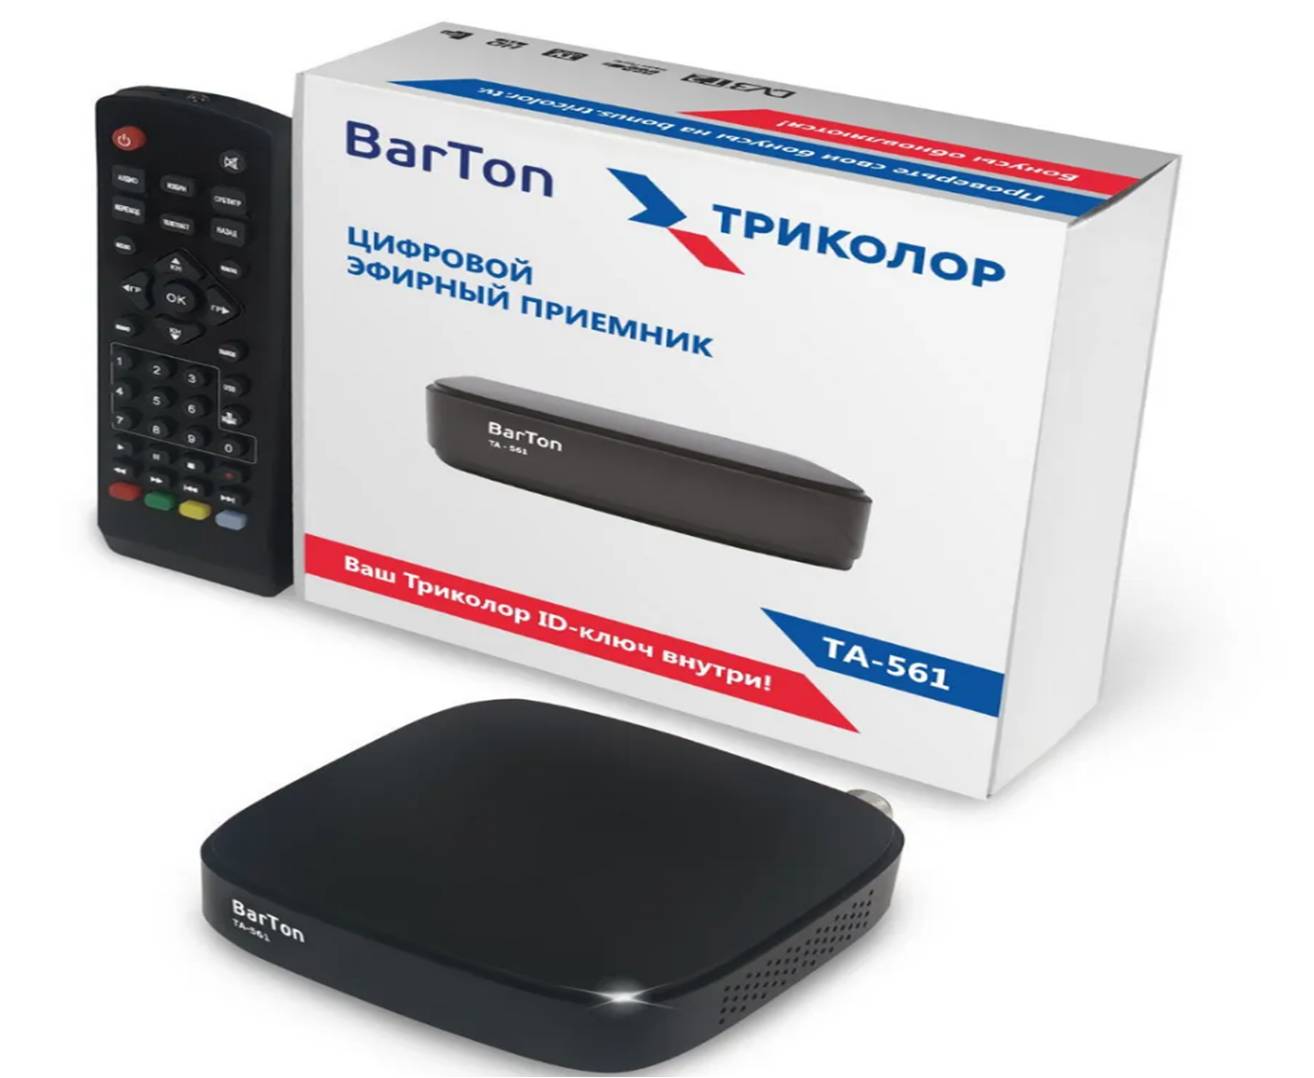 Цифровой эфирный приемник. Ресивер DVB-t2 Barton ta-561.